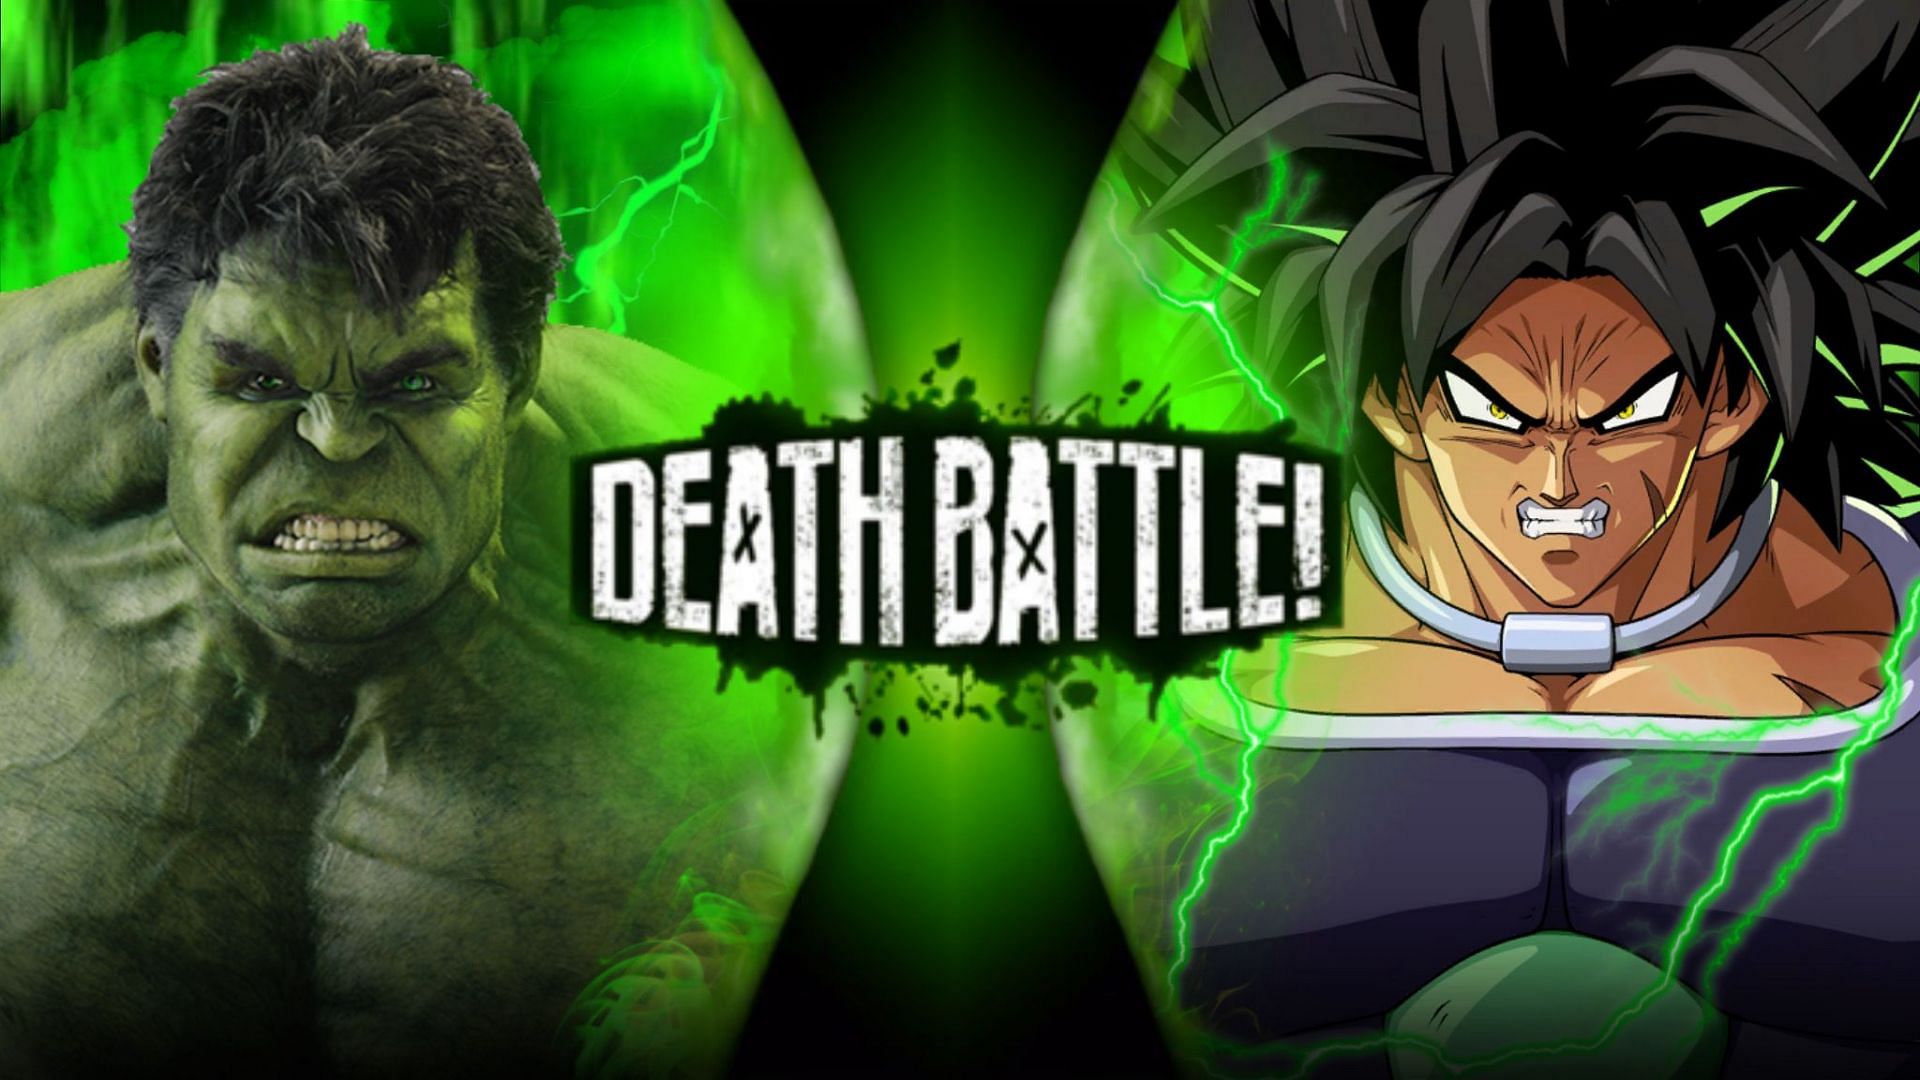 Fanmade poster from real Death Battle: Hulk vs. Broly (Image via Deviantart/DarkVader2016)